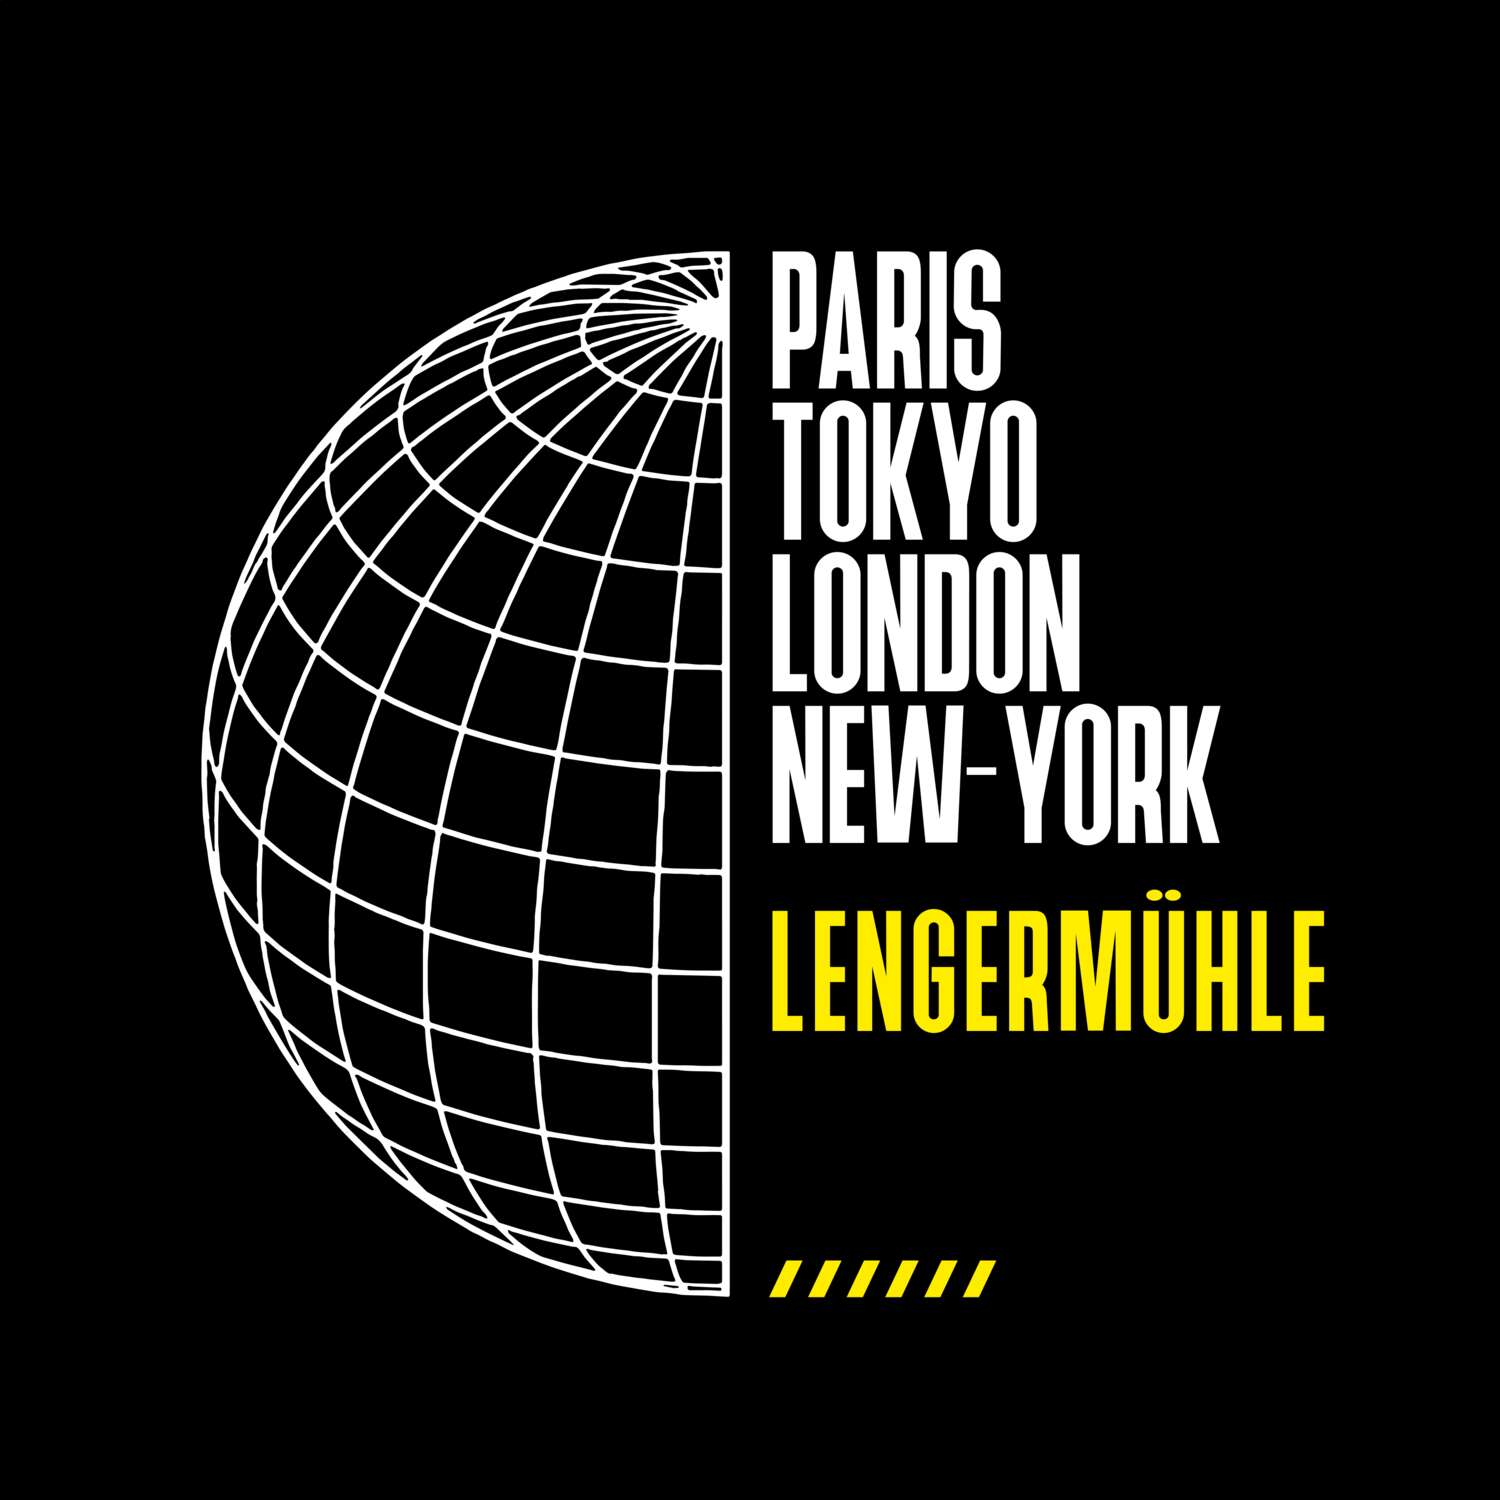 Lengermühle T-Shirt »Paris Tokyo London«